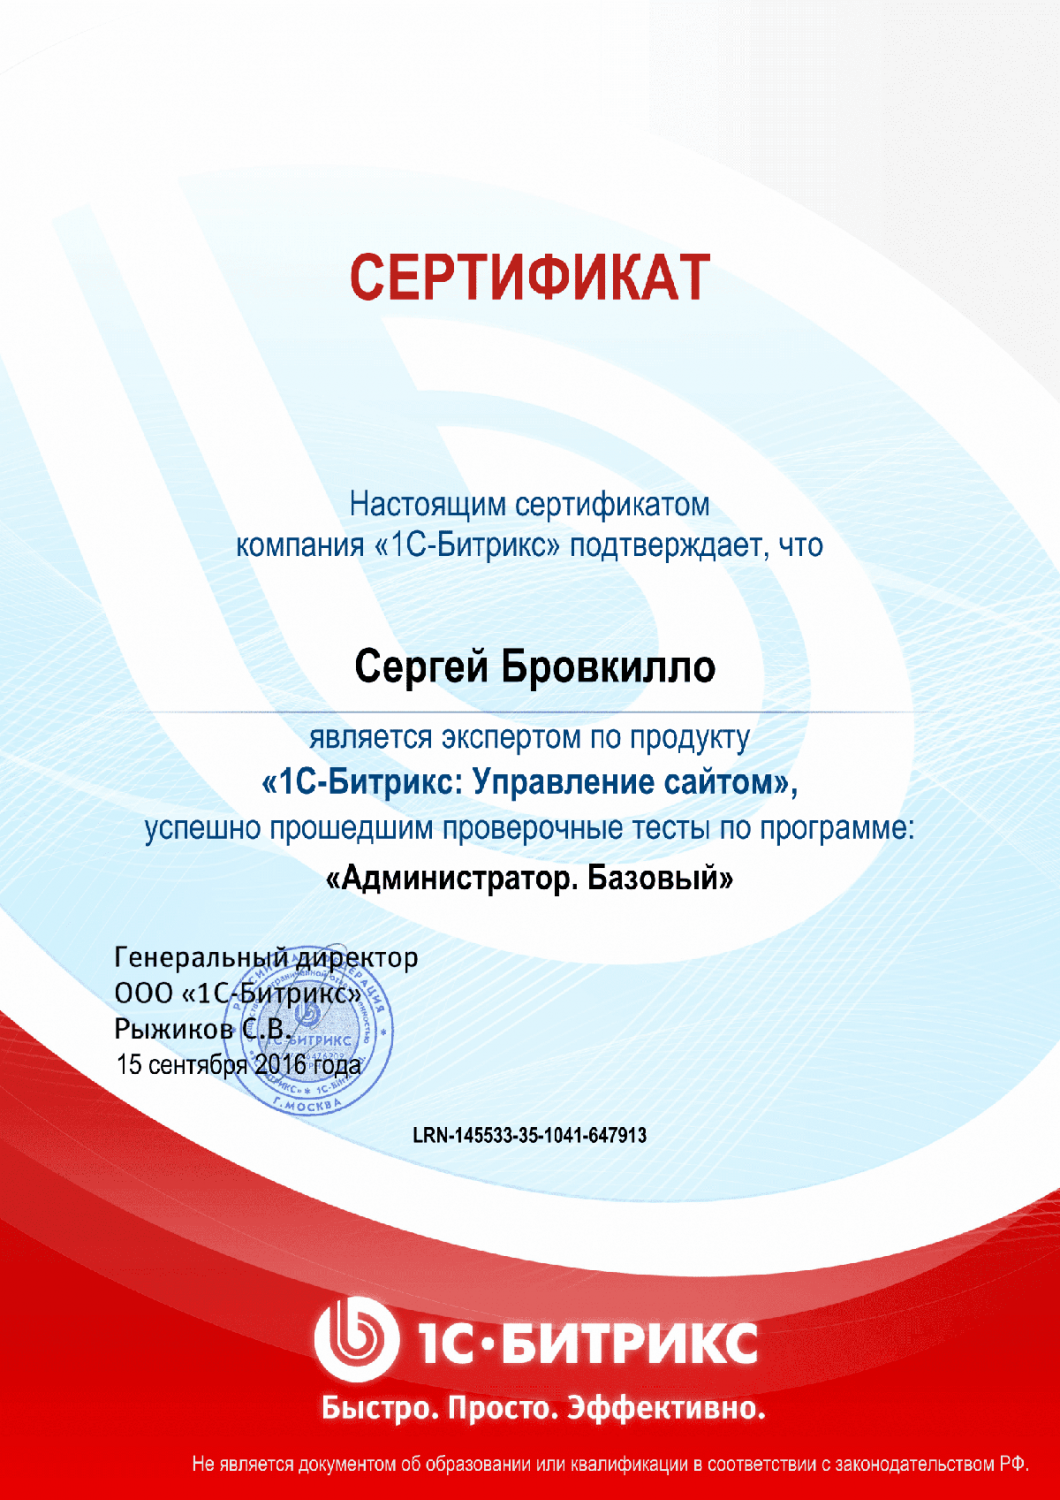 Сертификат эксперта по программе "Администратор. Базовый" в Улан-Удэ